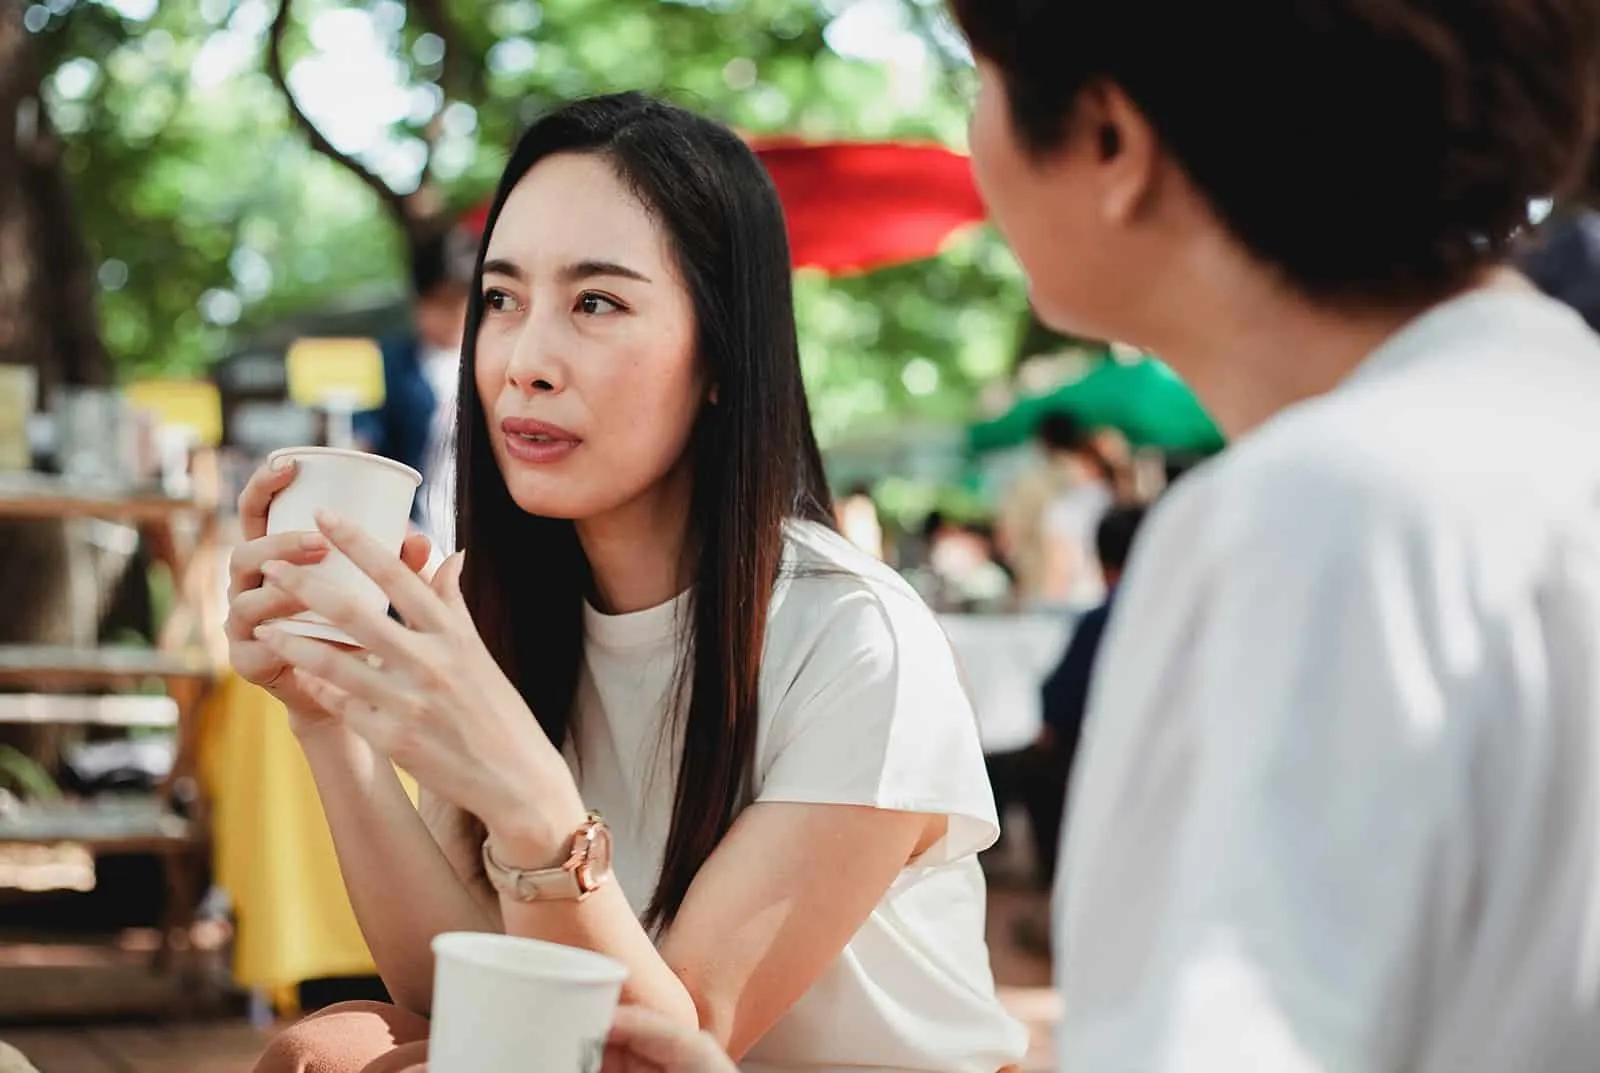 eine nachdenkliche Frau, die mit einer Freundin spricht, während sie zusammen Kaffee trinkt